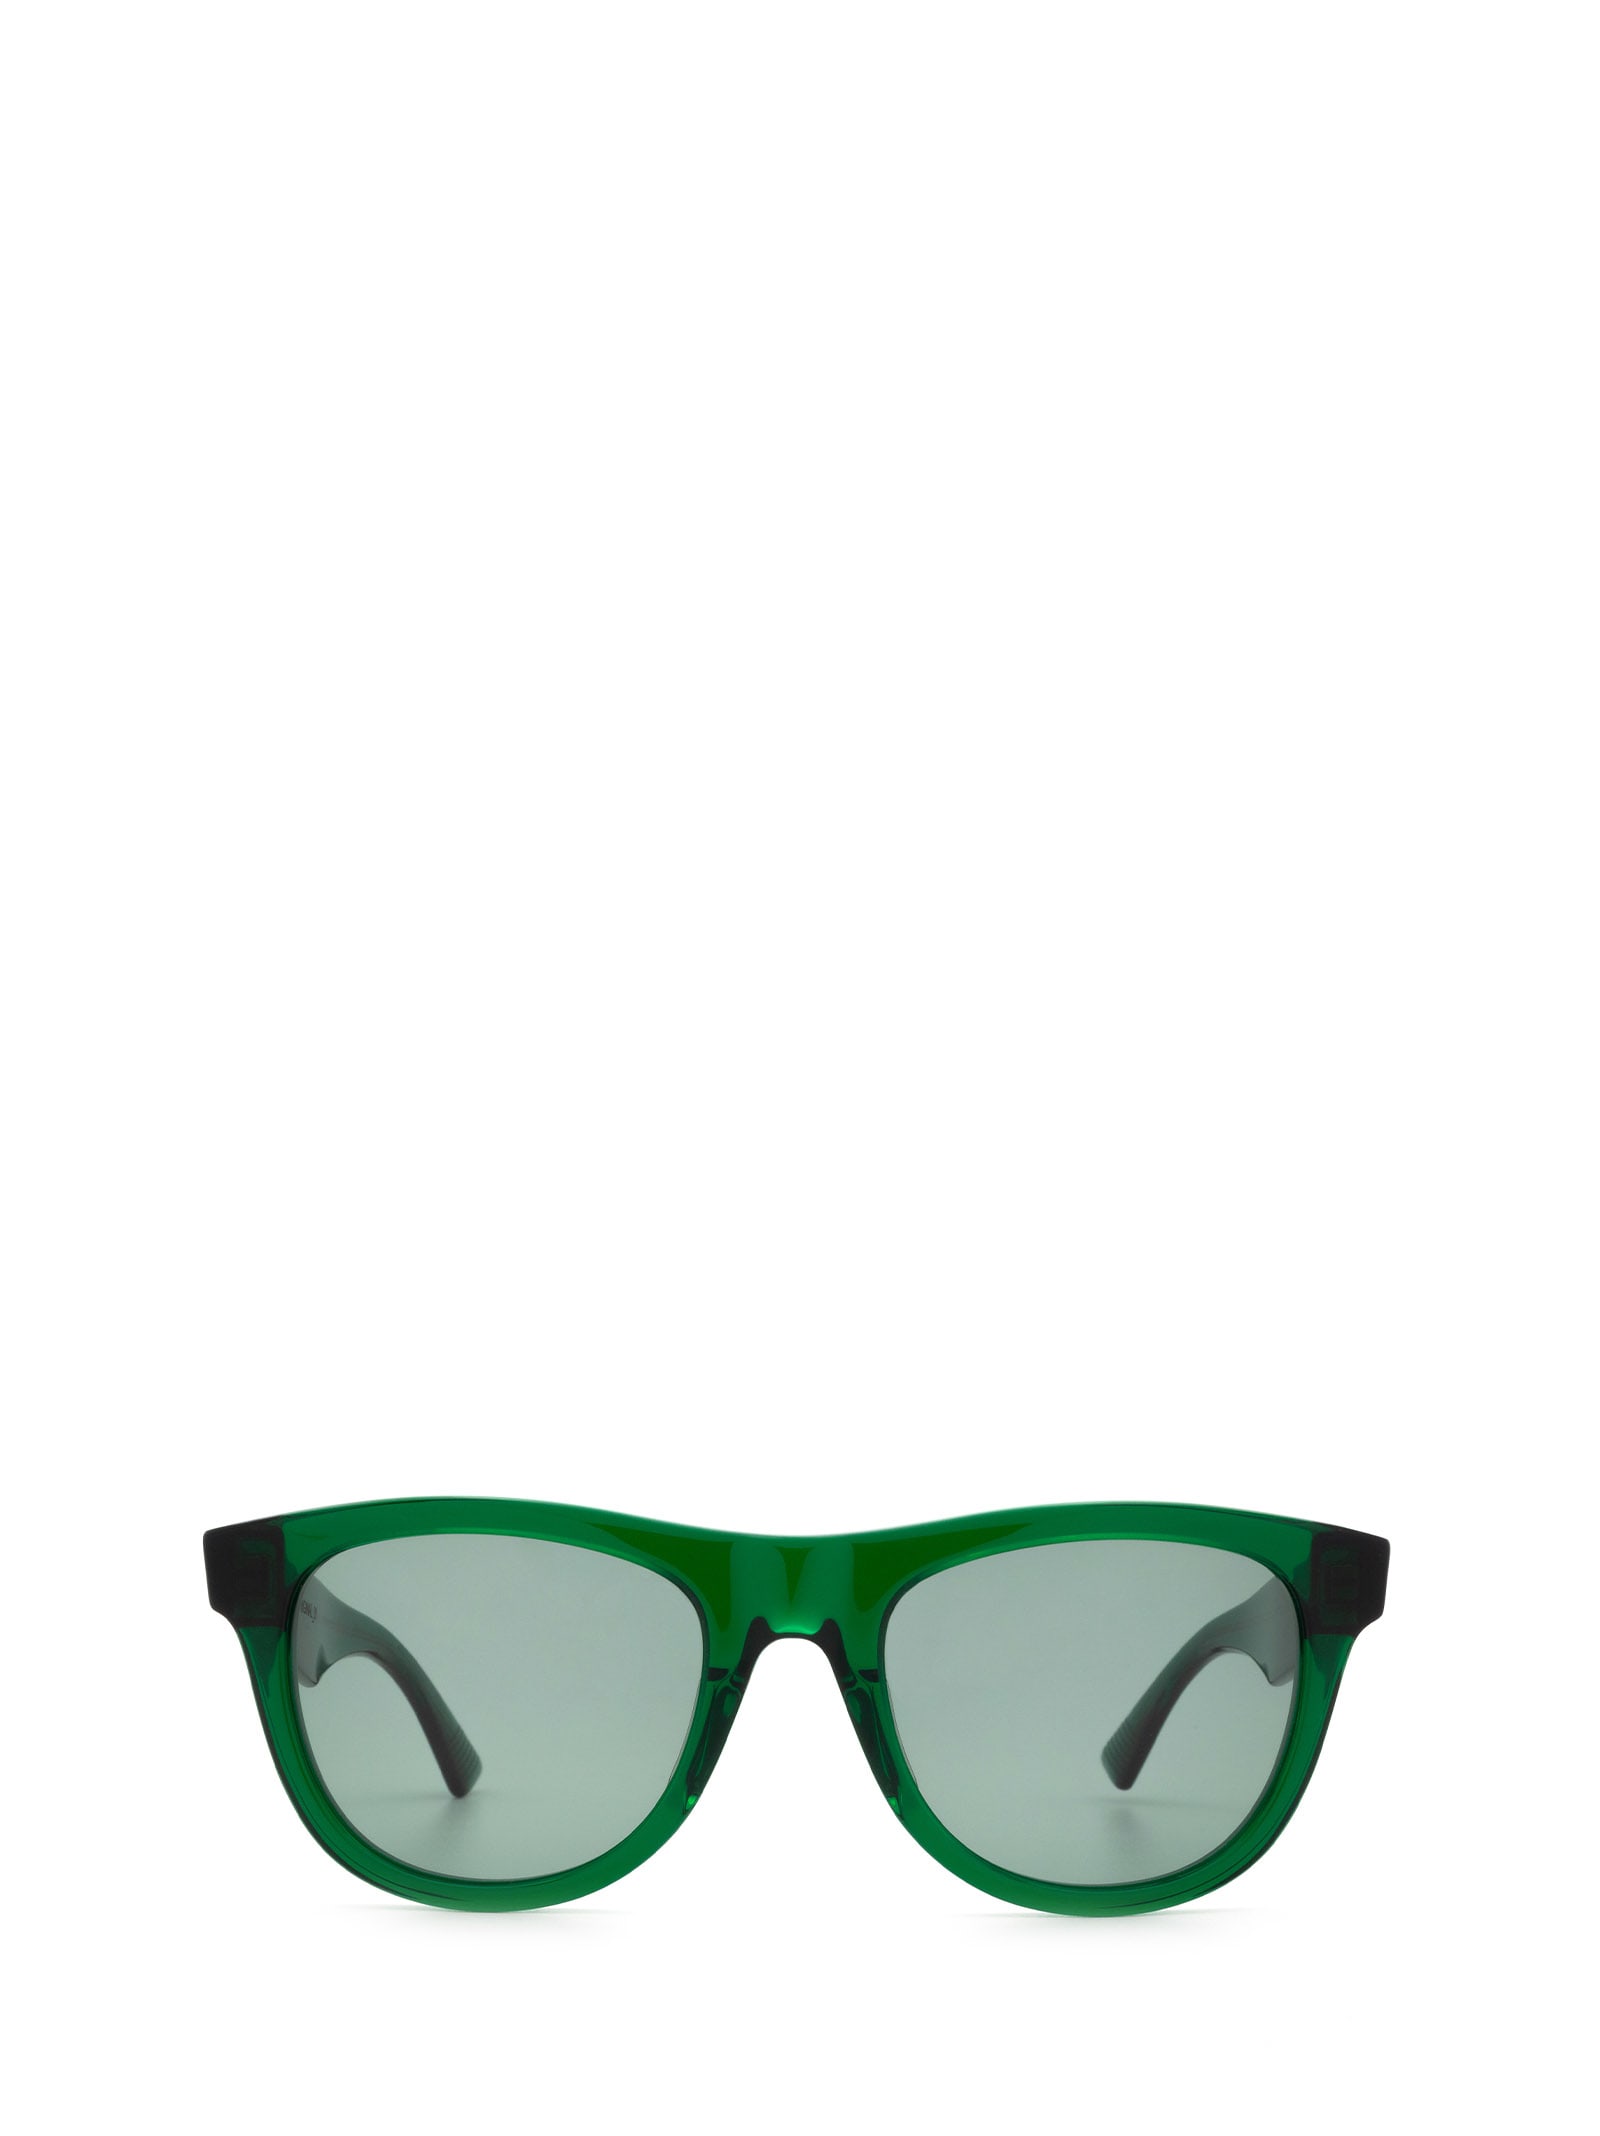 Bottega Veneta Bottega Veneta Bv1001s Green Sunglasses